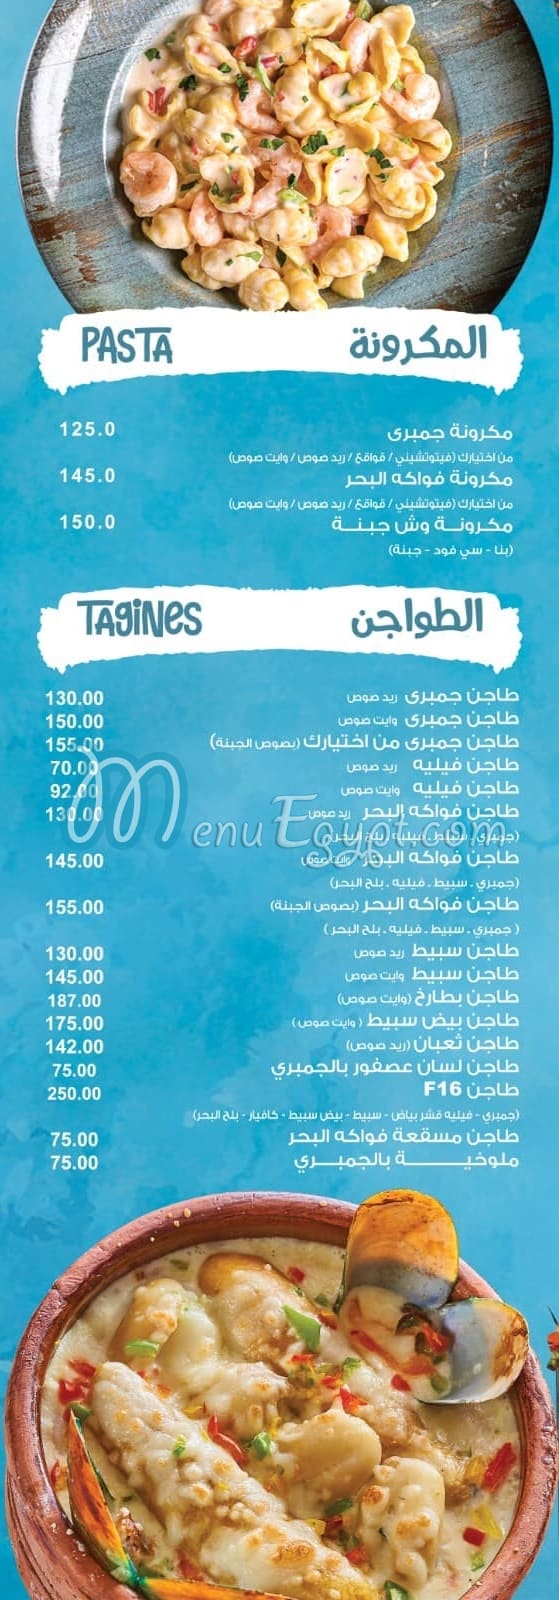 Afandina El Bahr menu Egypt